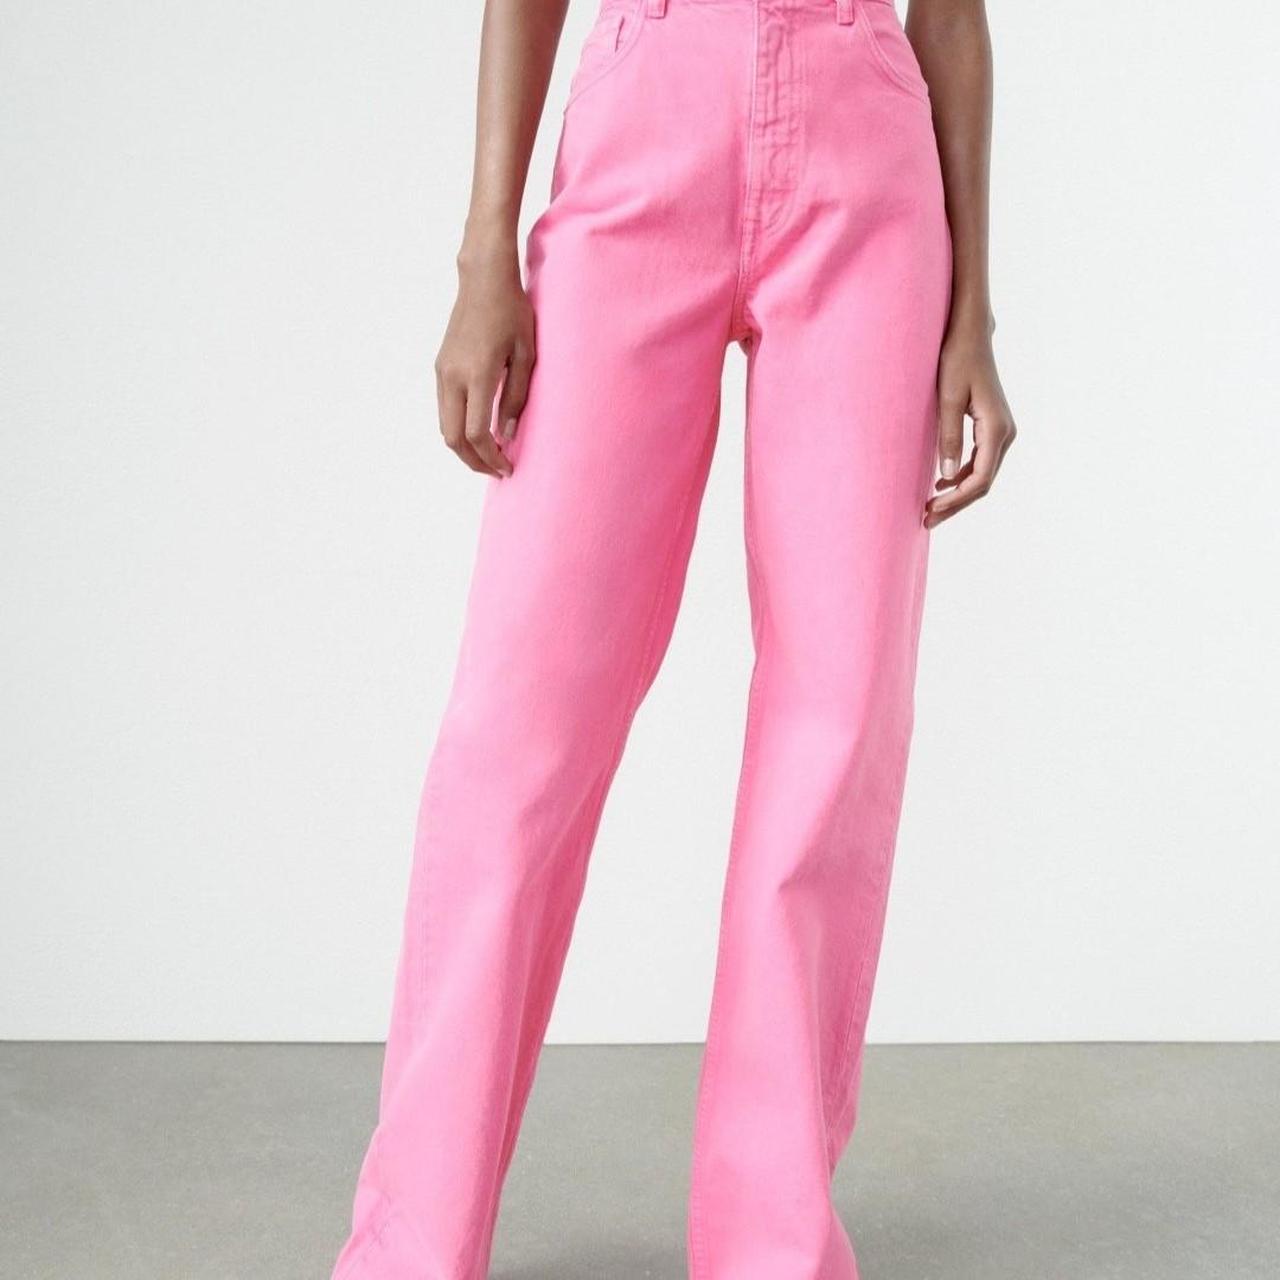 Zara Women's Pink Jeans | Depop